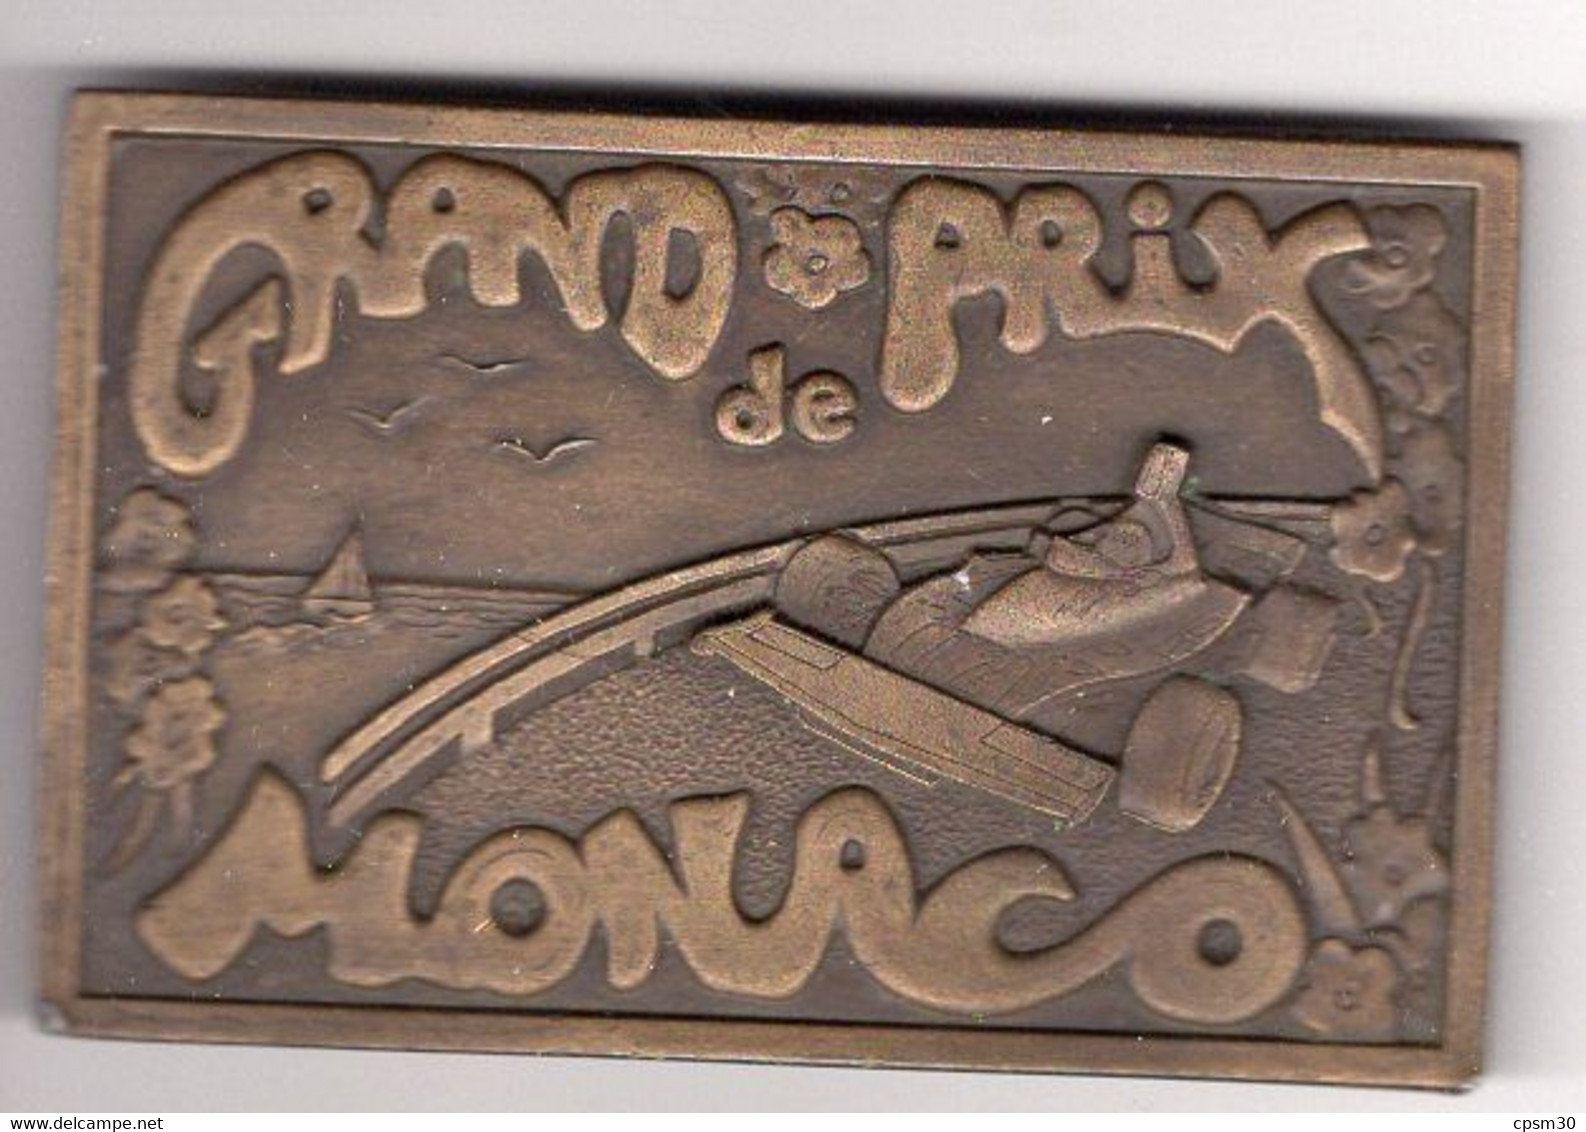 Boucle De Ceinture GRAND PRIX DE MONACO - Kleding, Souvenirs & Andere